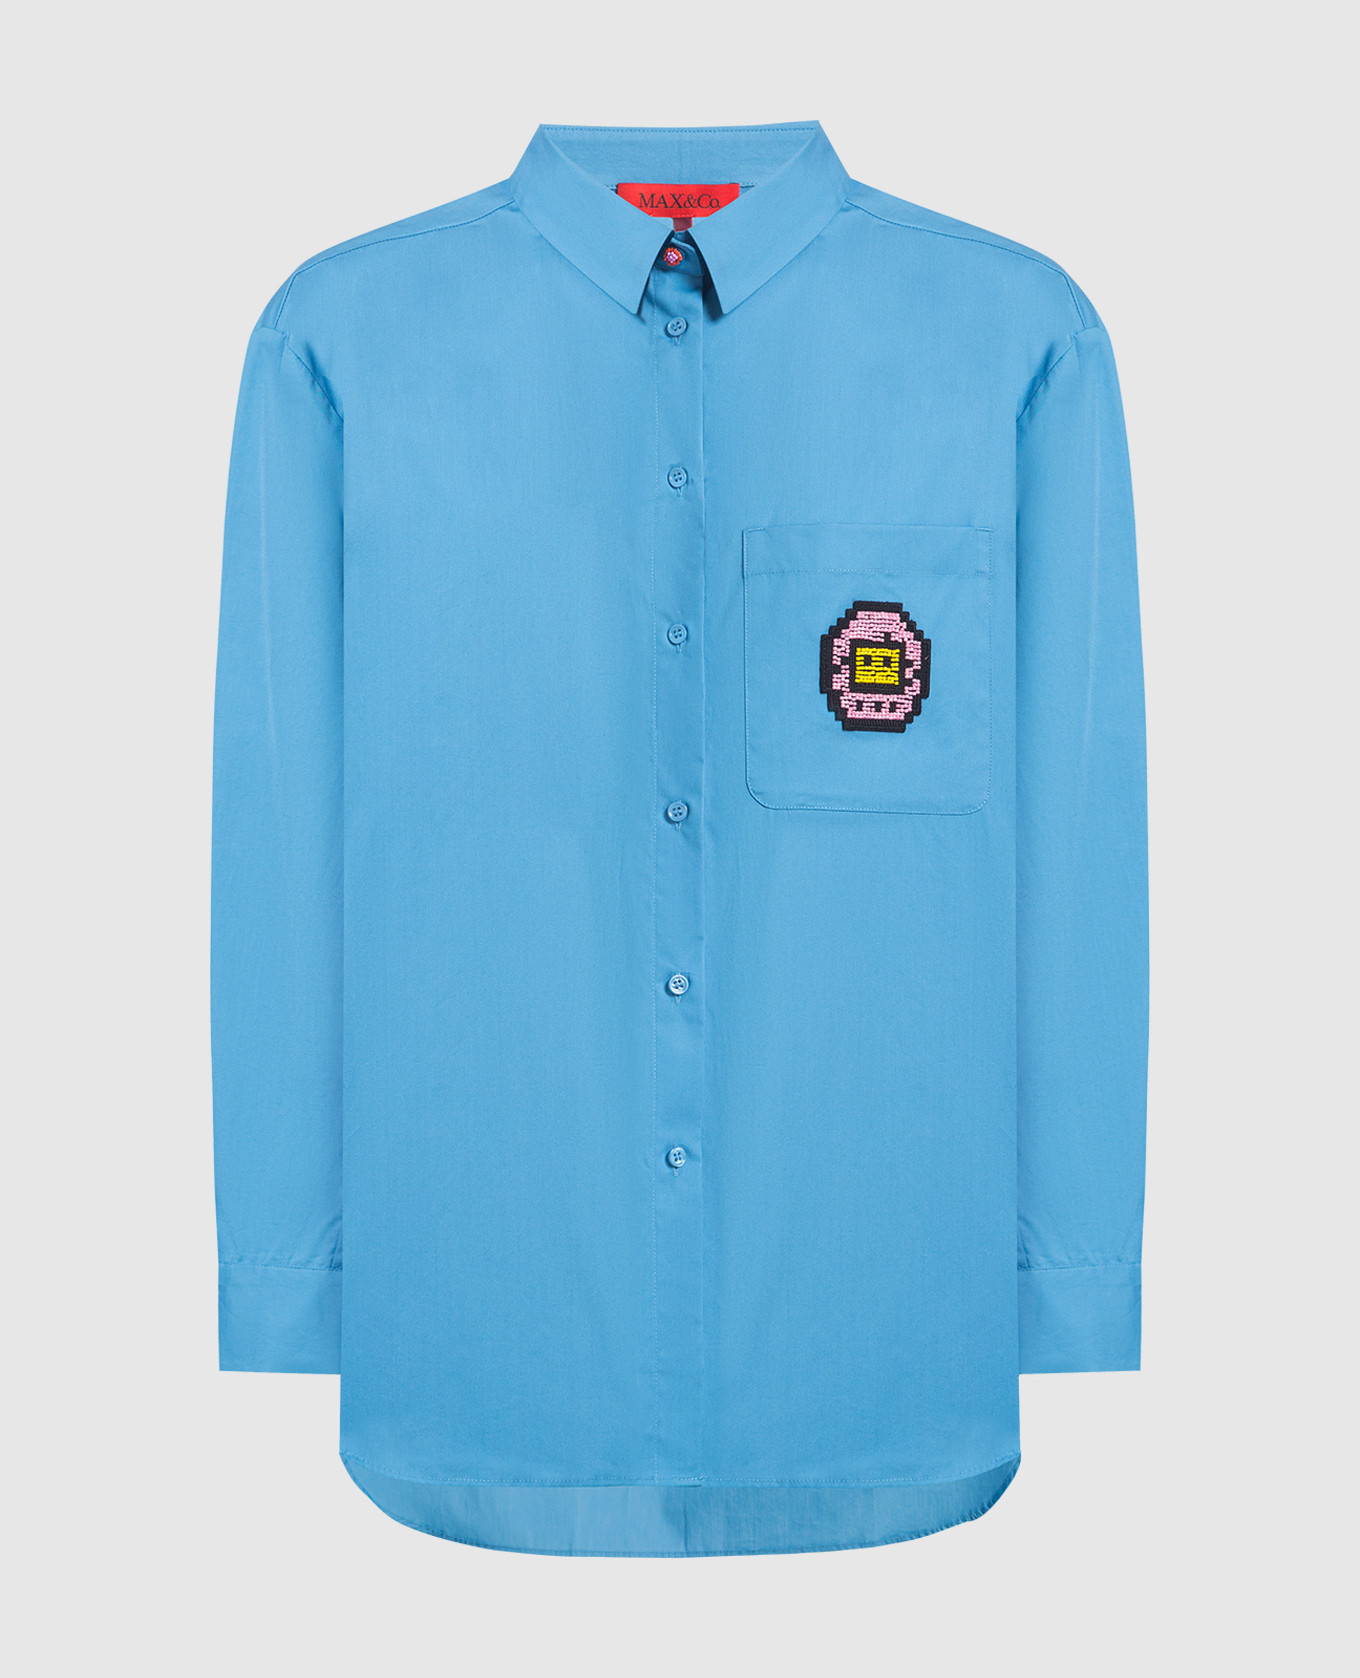 TAMASHIR blue shirt with Tamagotchi patch